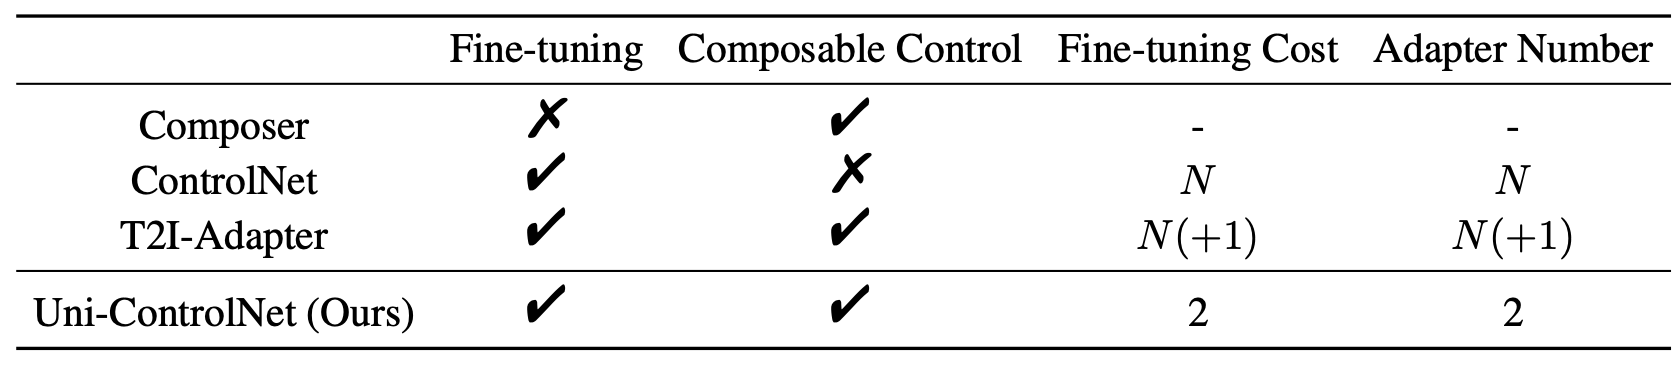 comparison_table